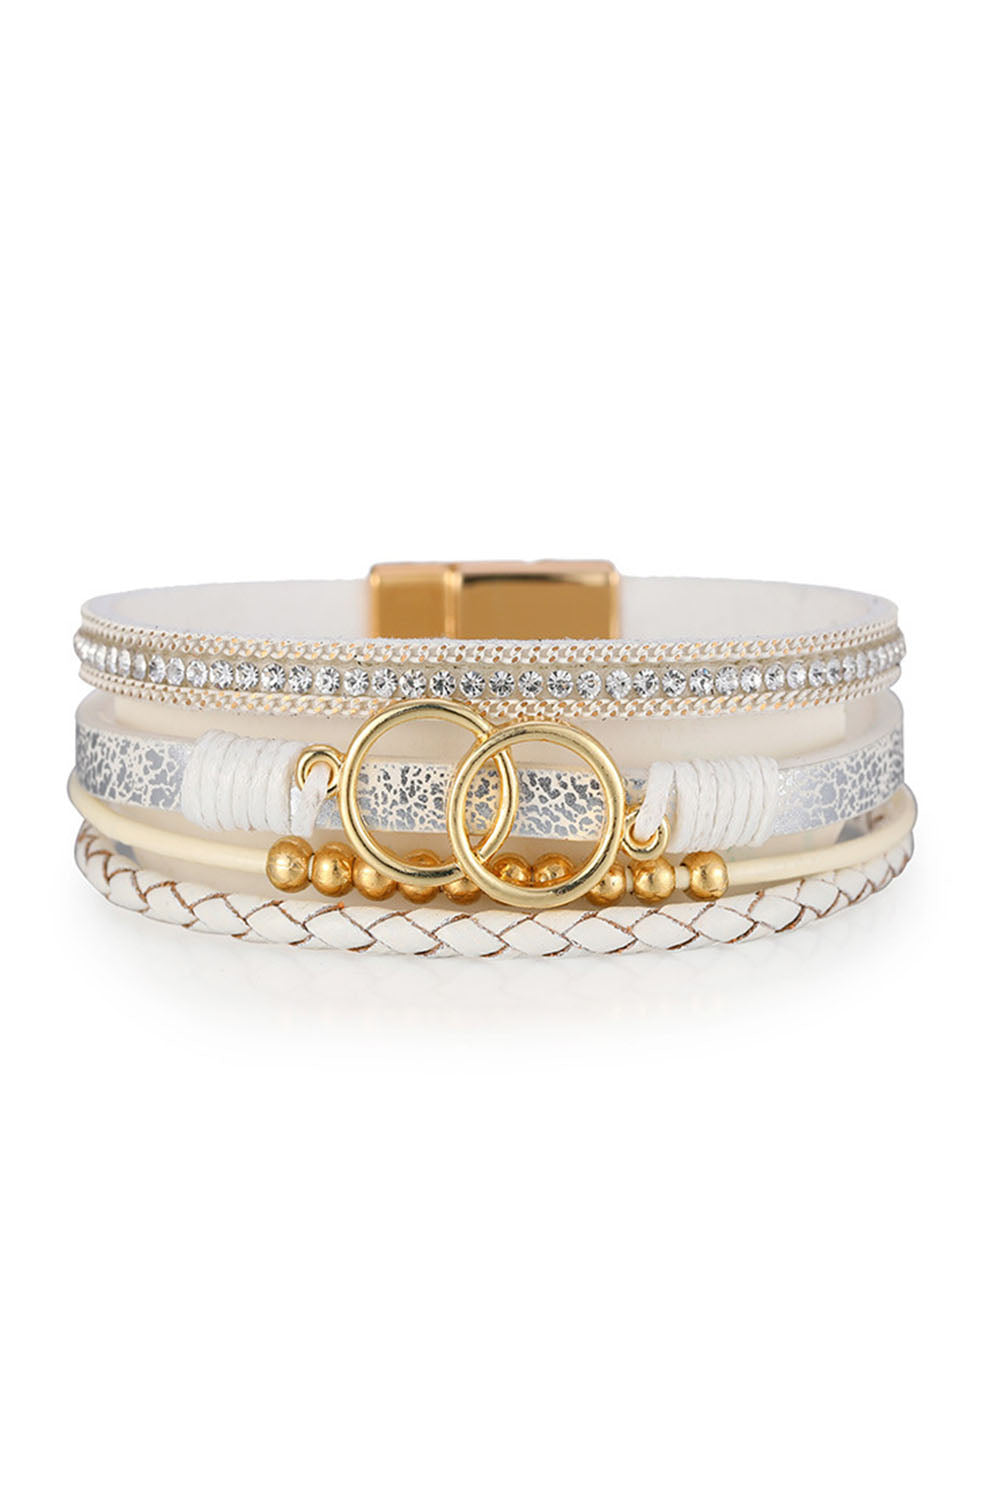 Bracelet , Eight Ring Beads, Hand Woven, White